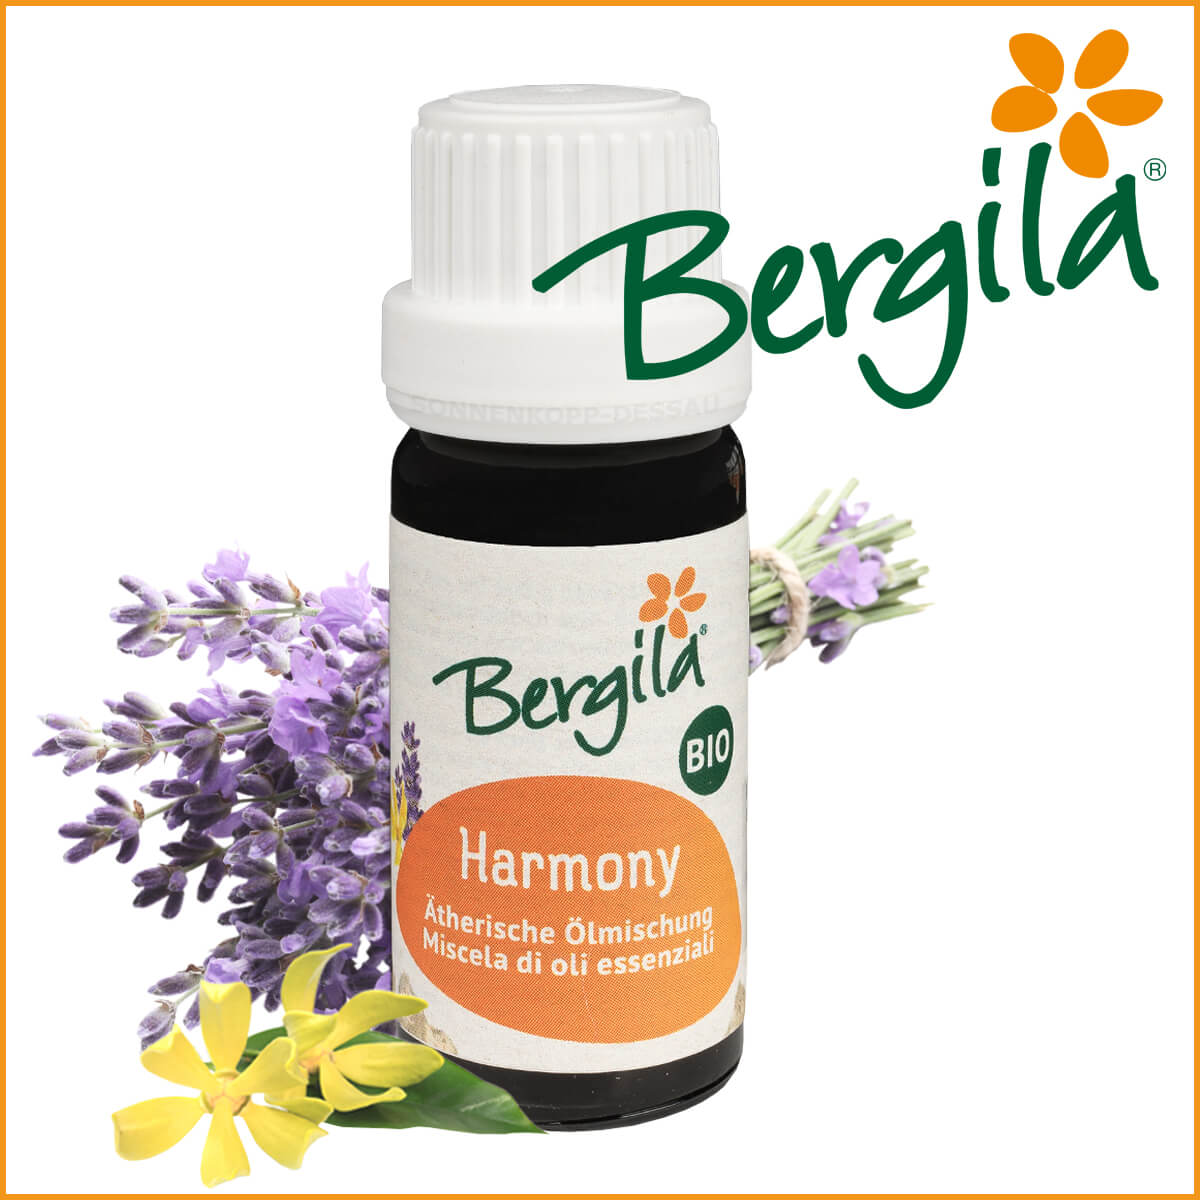 HARMONY - Bergila ® BIO ätherisches Öl - Harmonyöl kaufen